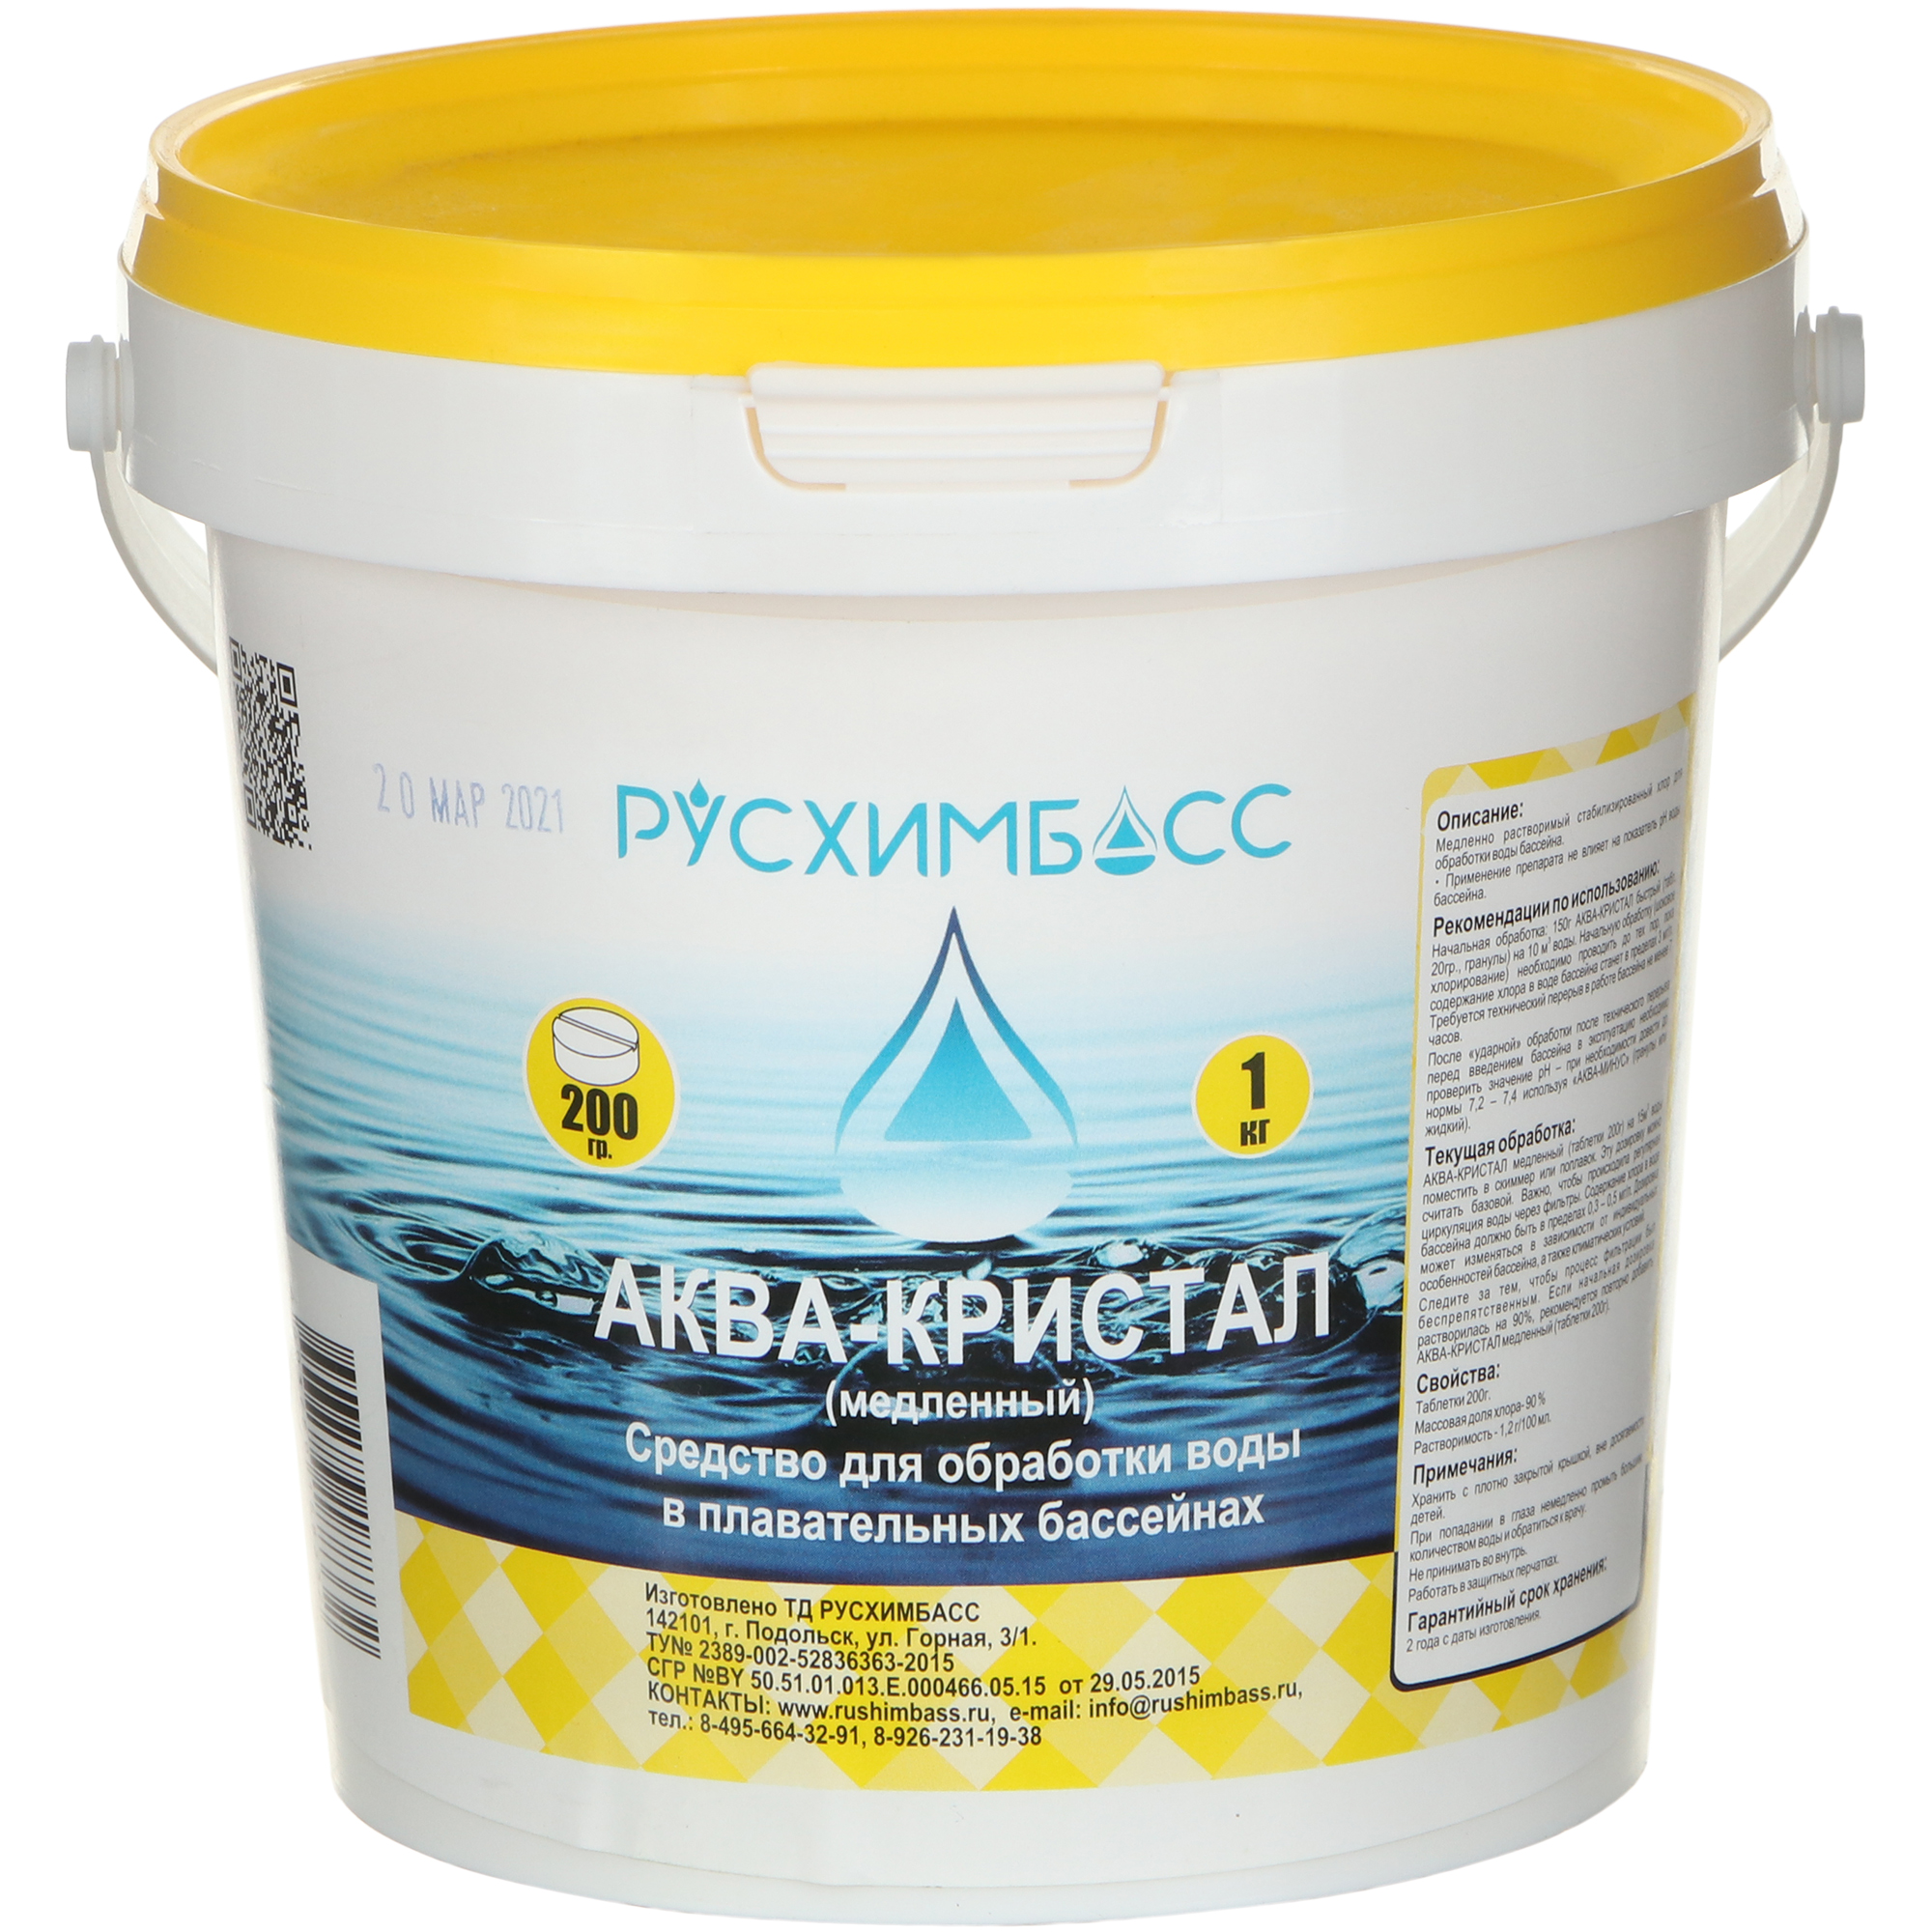 Средство для обработки воды в плавательных бассейнах Русхимбасс Аква-кристал(медленный), таблетки 200 гр, 1 кг